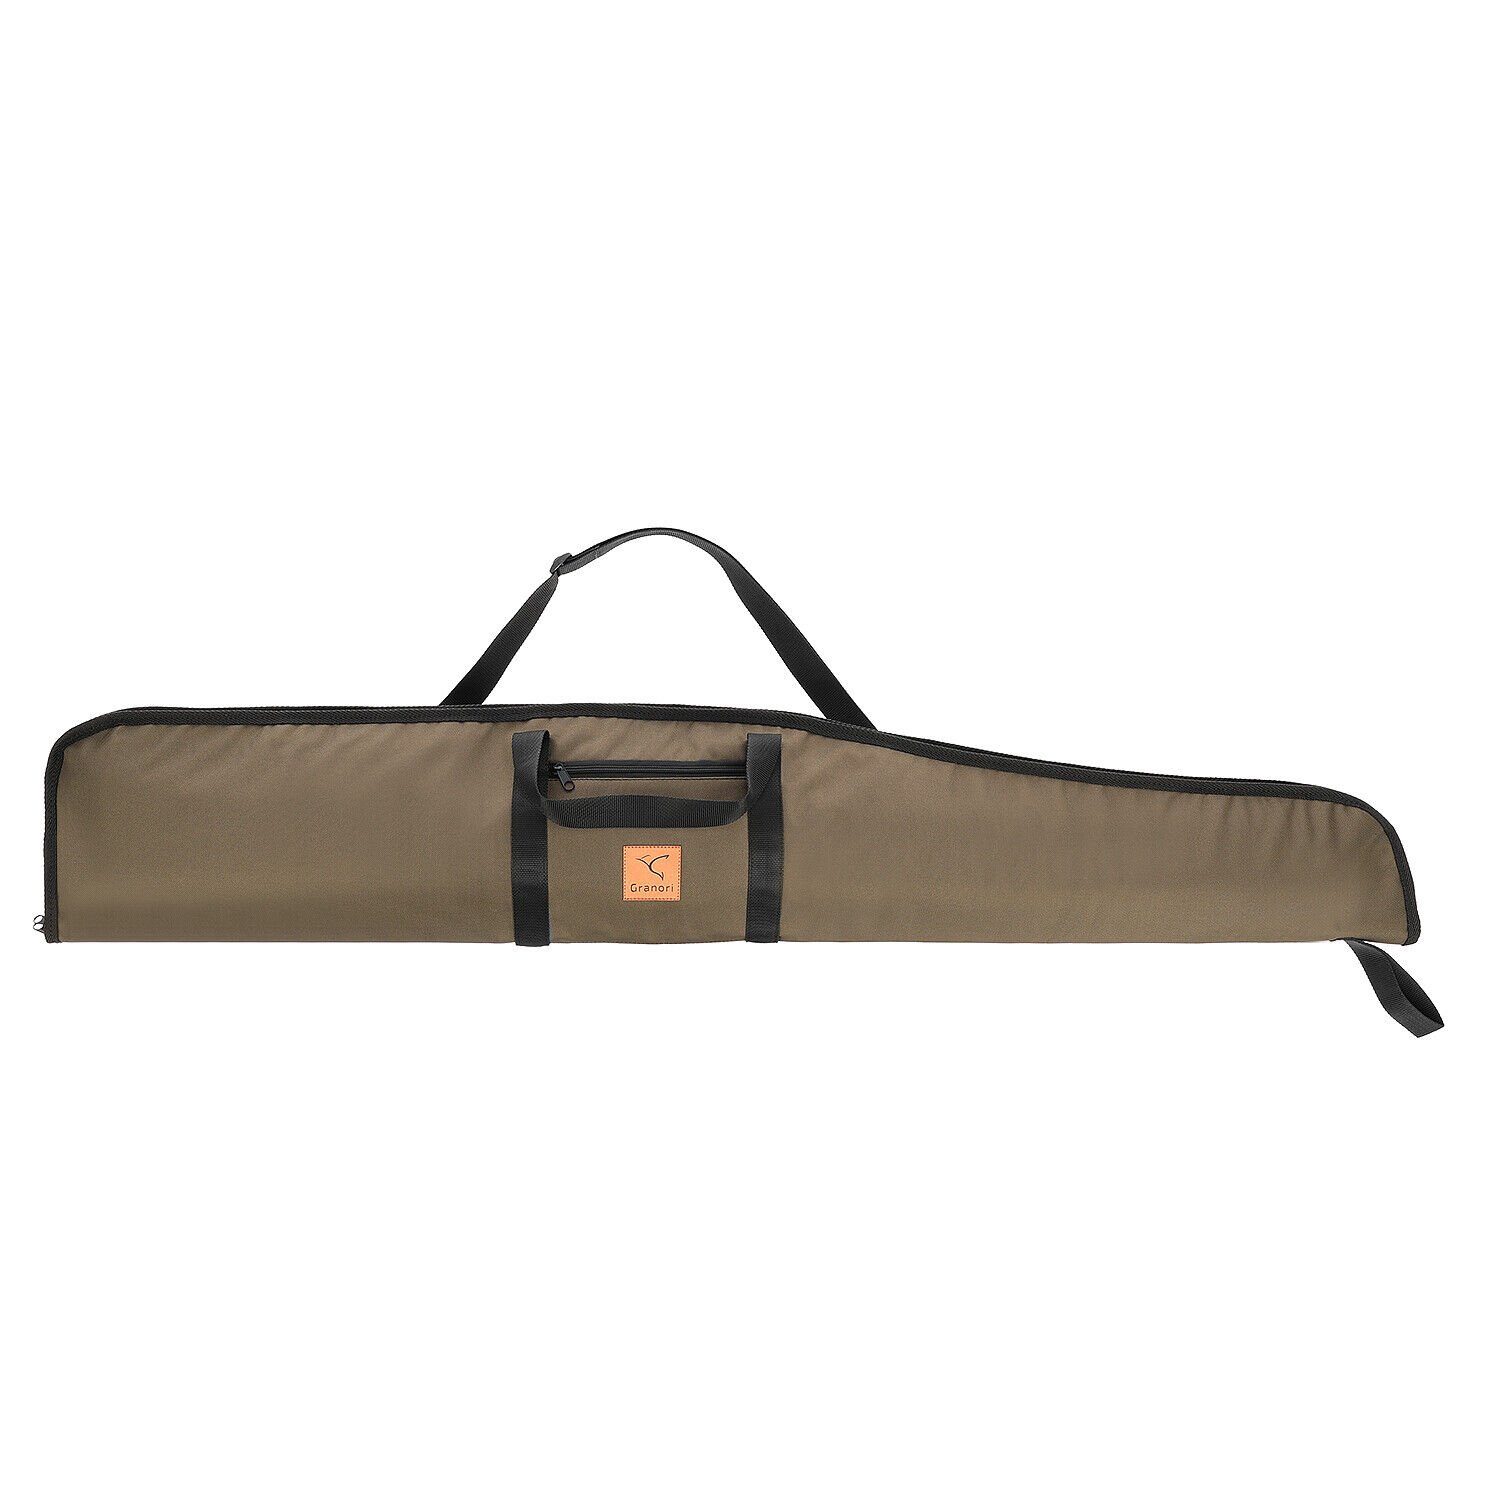 Granori Sporttasche für Luftgewehr mit Zielfernrohr, Waffentasche gepolstert 135 cm Länge, abschließbar, mit Außentasche und verstellbarem Tragegurt, wetterfest